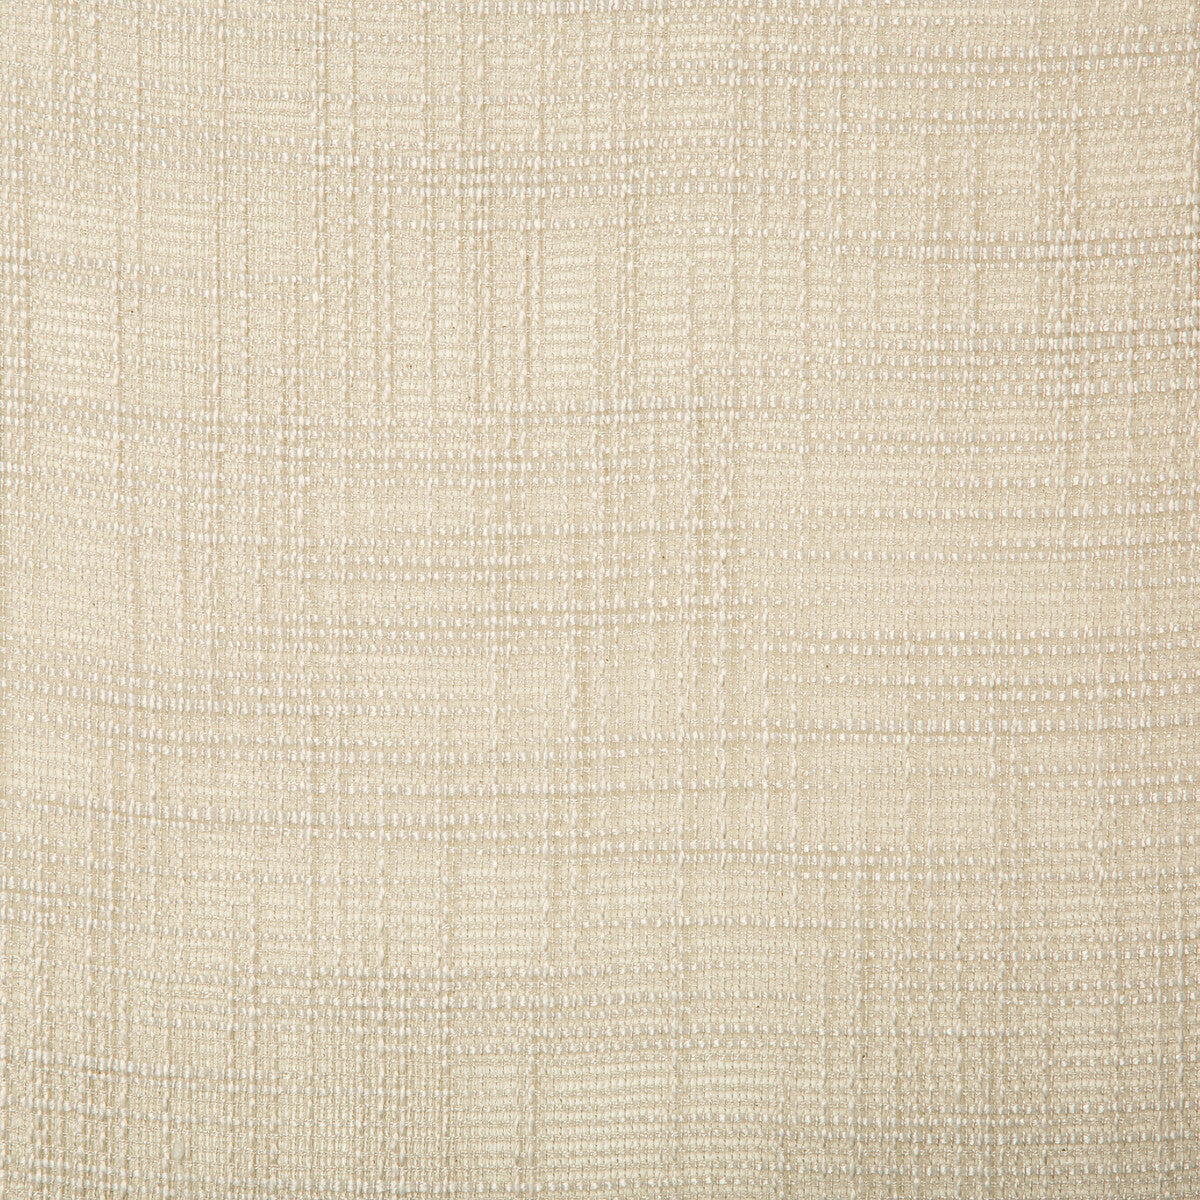 Kravet Basics fabric in 4670-11 color - pattern 4670.11.0 - by Kravet Basics